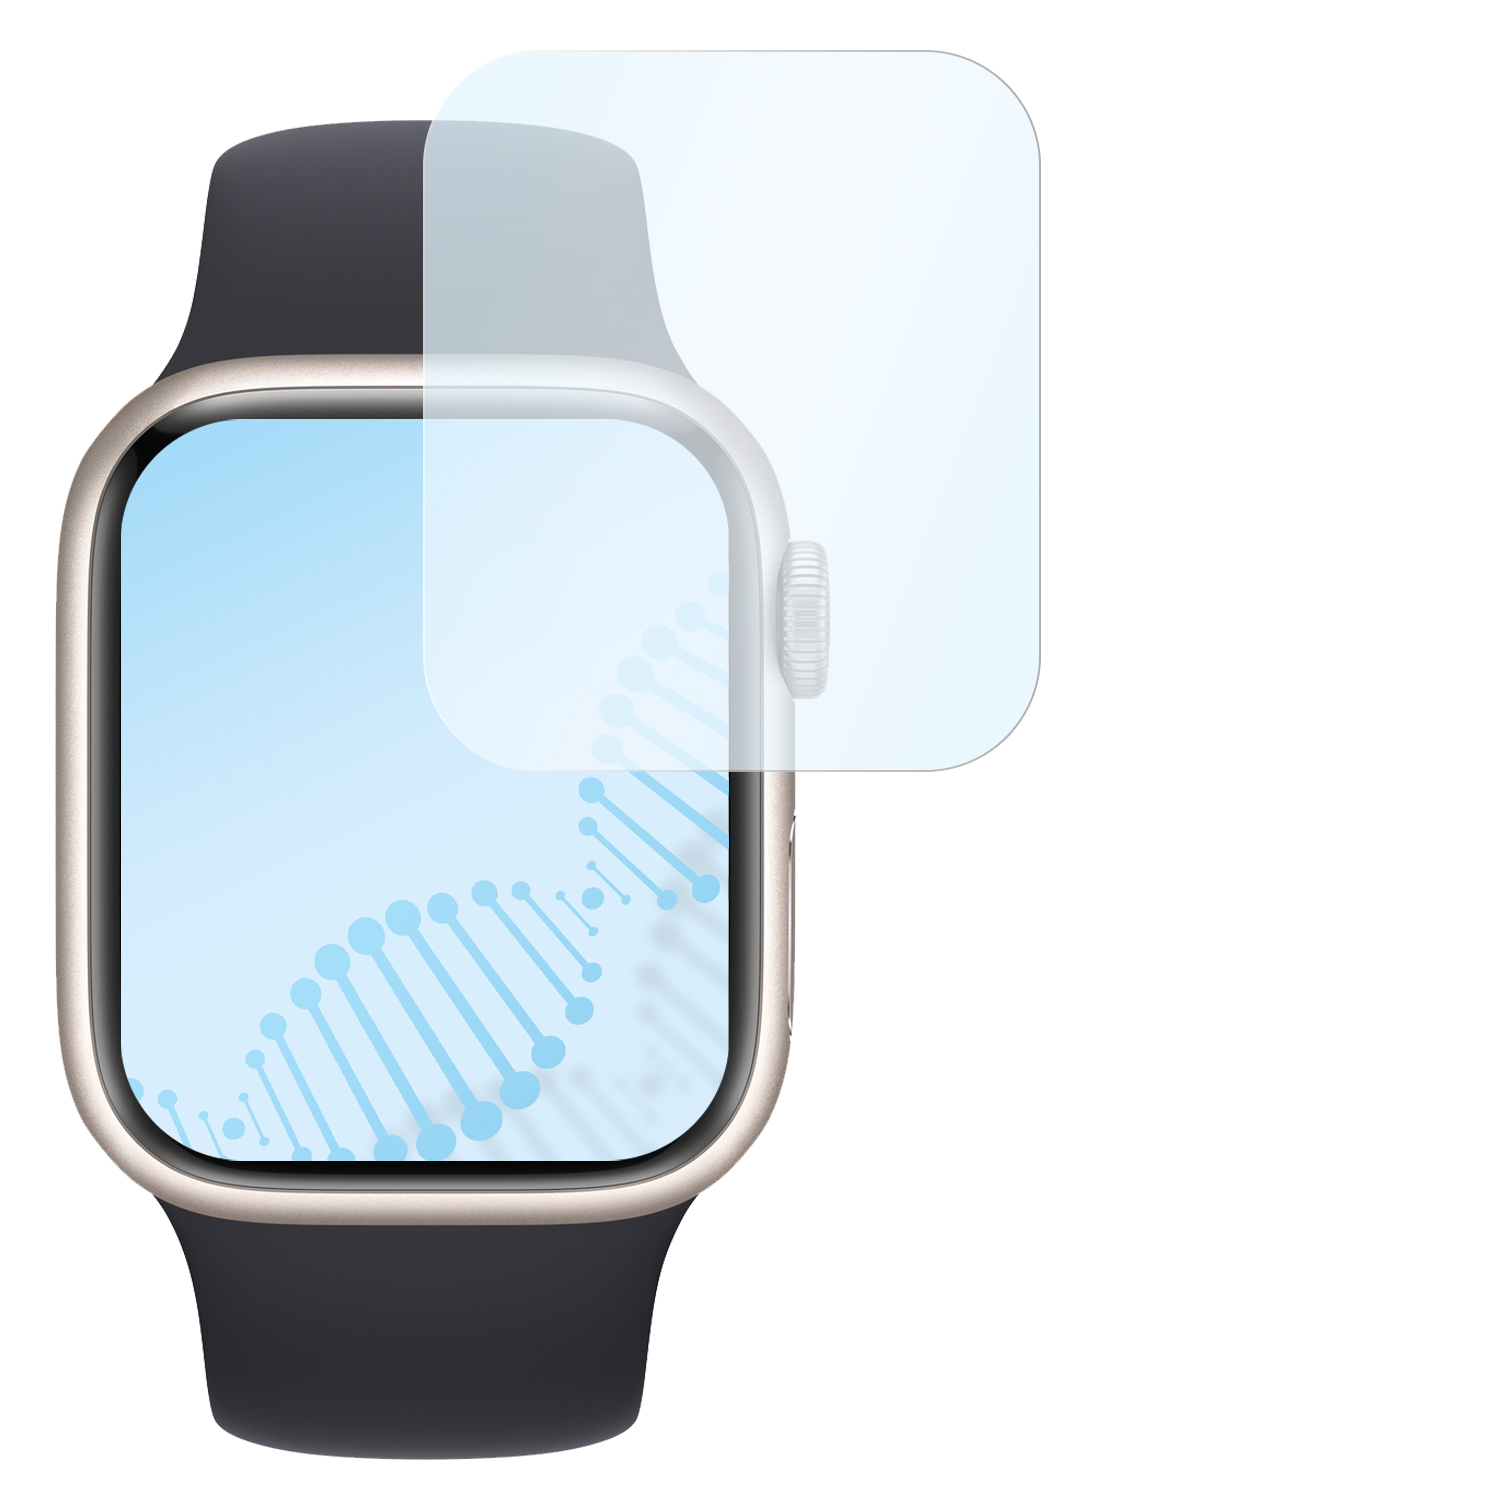 Series antibakterielle Displayschutz(für Apple (41mm) Watch 8 flexible Hybridglasfolie (41 Series | SLABO mm)) 7 Watch